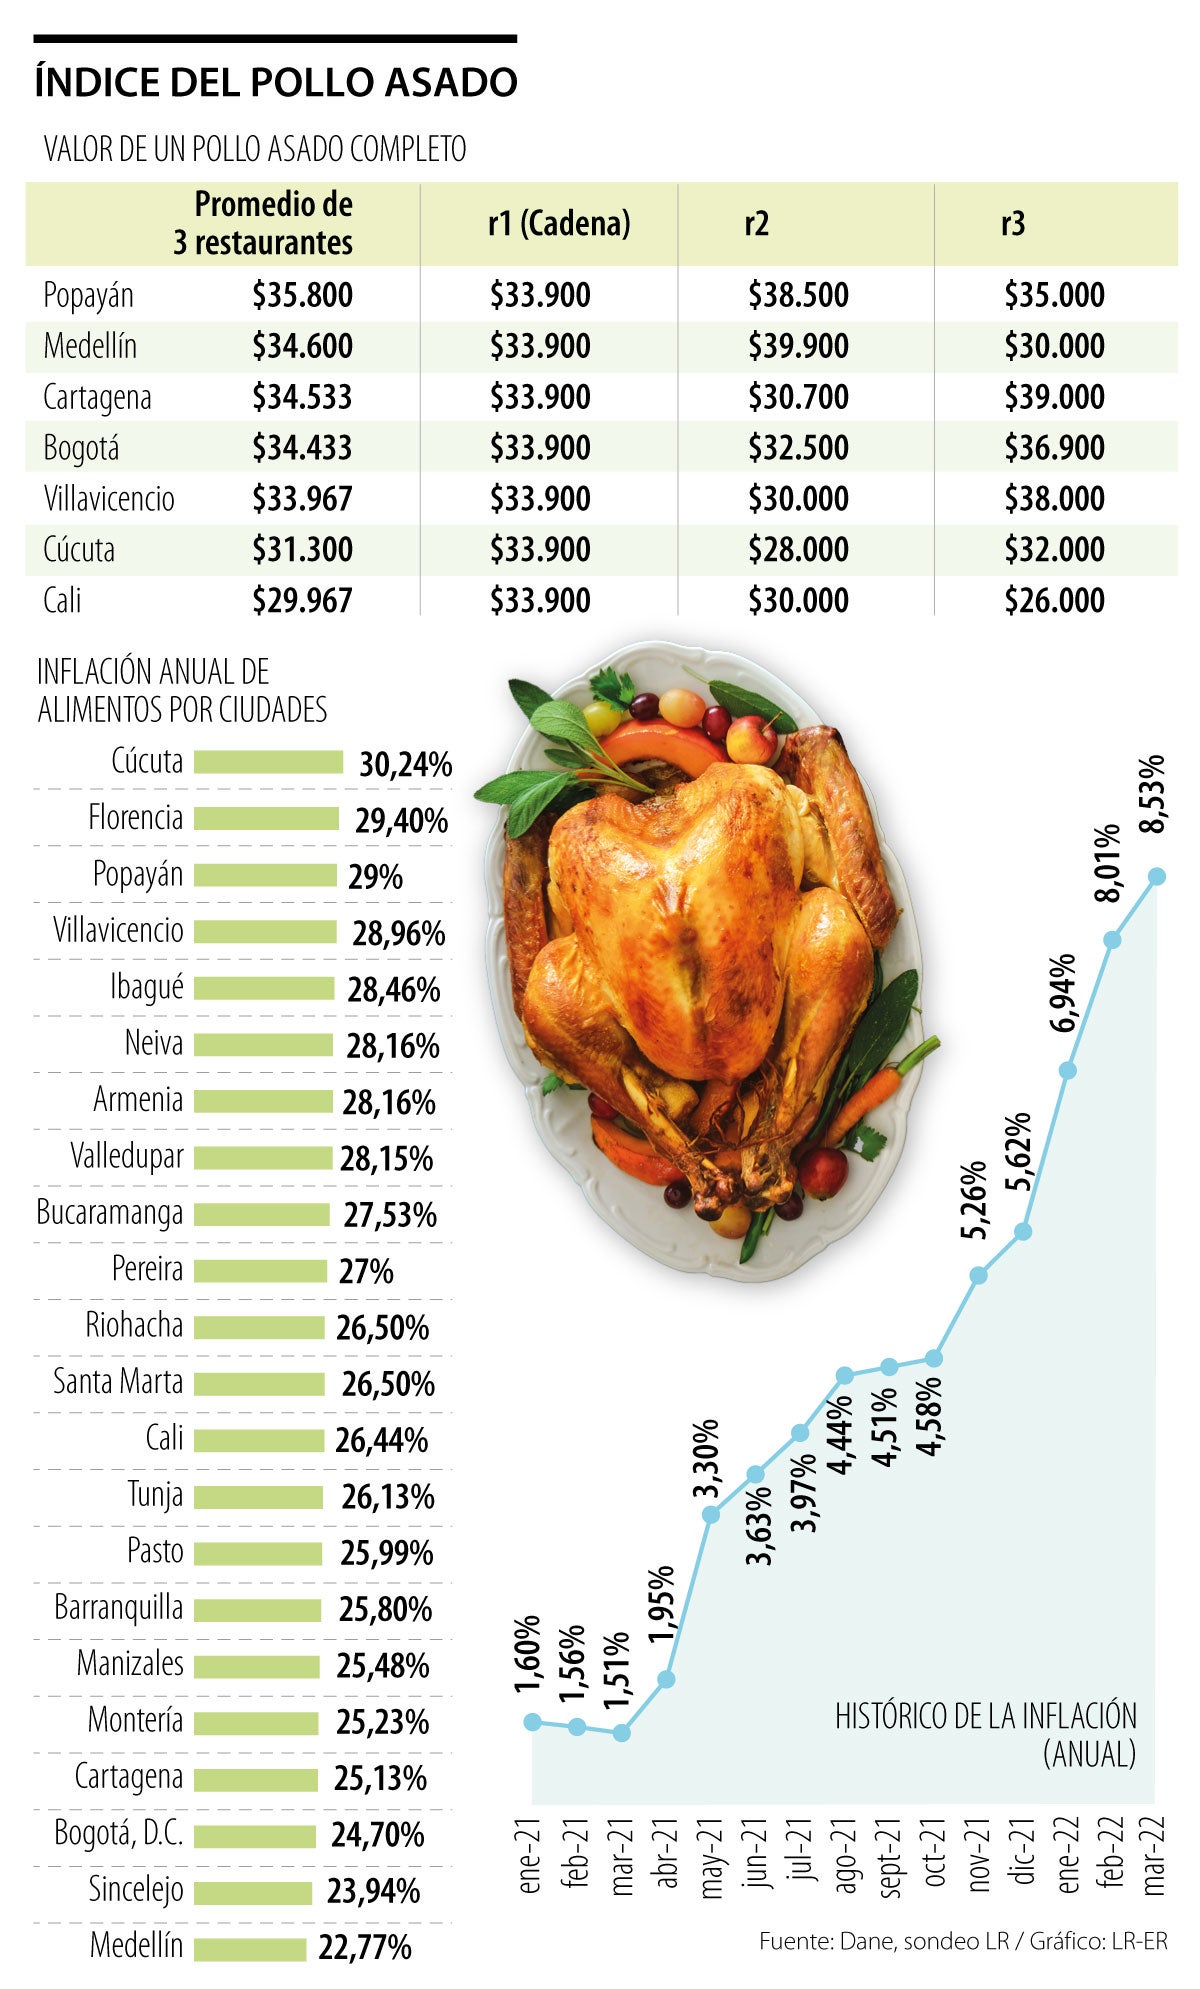 Popayán, Medellín y Cartagena son las ciudades que tienen el pollo asado  más caro